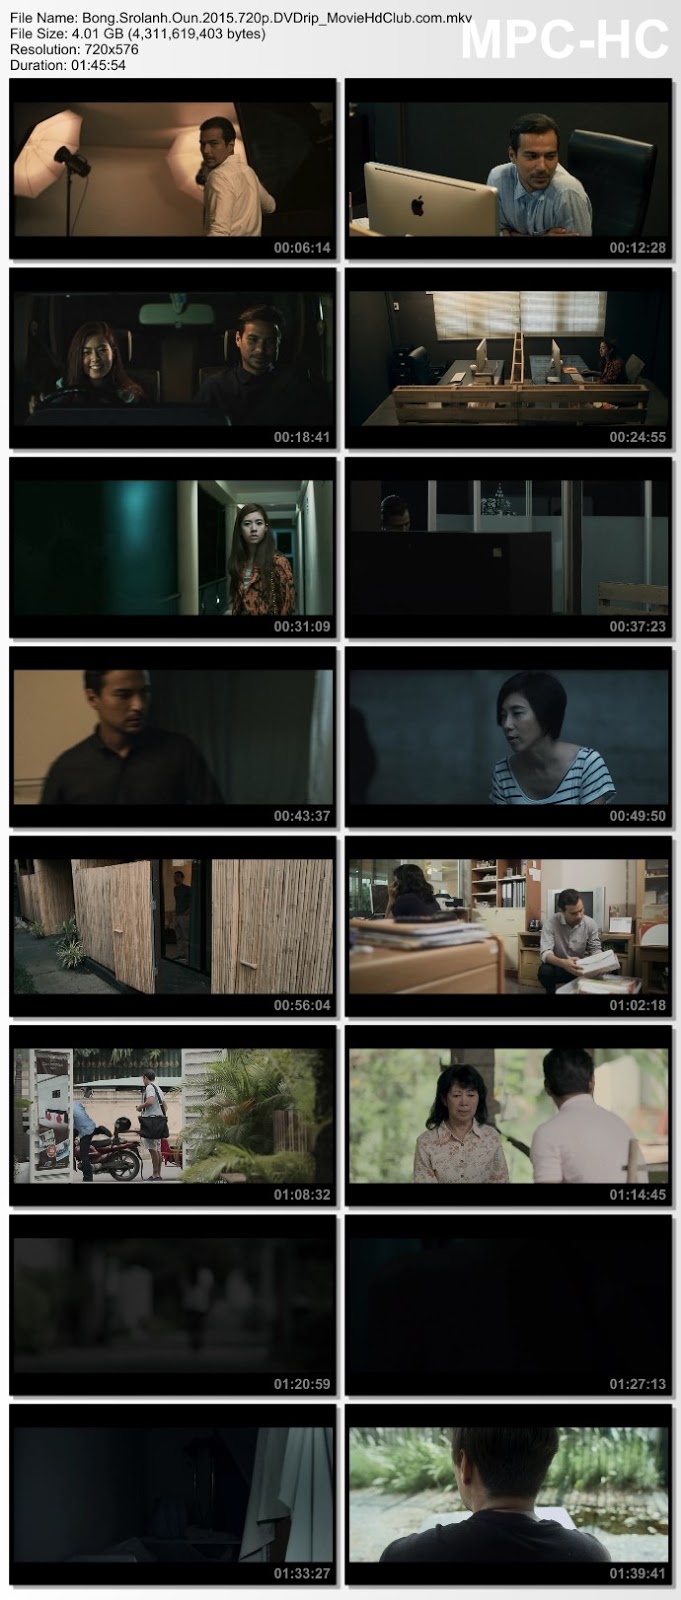 [Mini-HD] Bong Srolanh Oun (2015) - บองสรันโอน คนรักผี [DVDRip 720p][เสียง:ไทย 5.1][ซับ:ไทย/Eng][.MKV][4.02GB] BS_MovieHdClub_SS